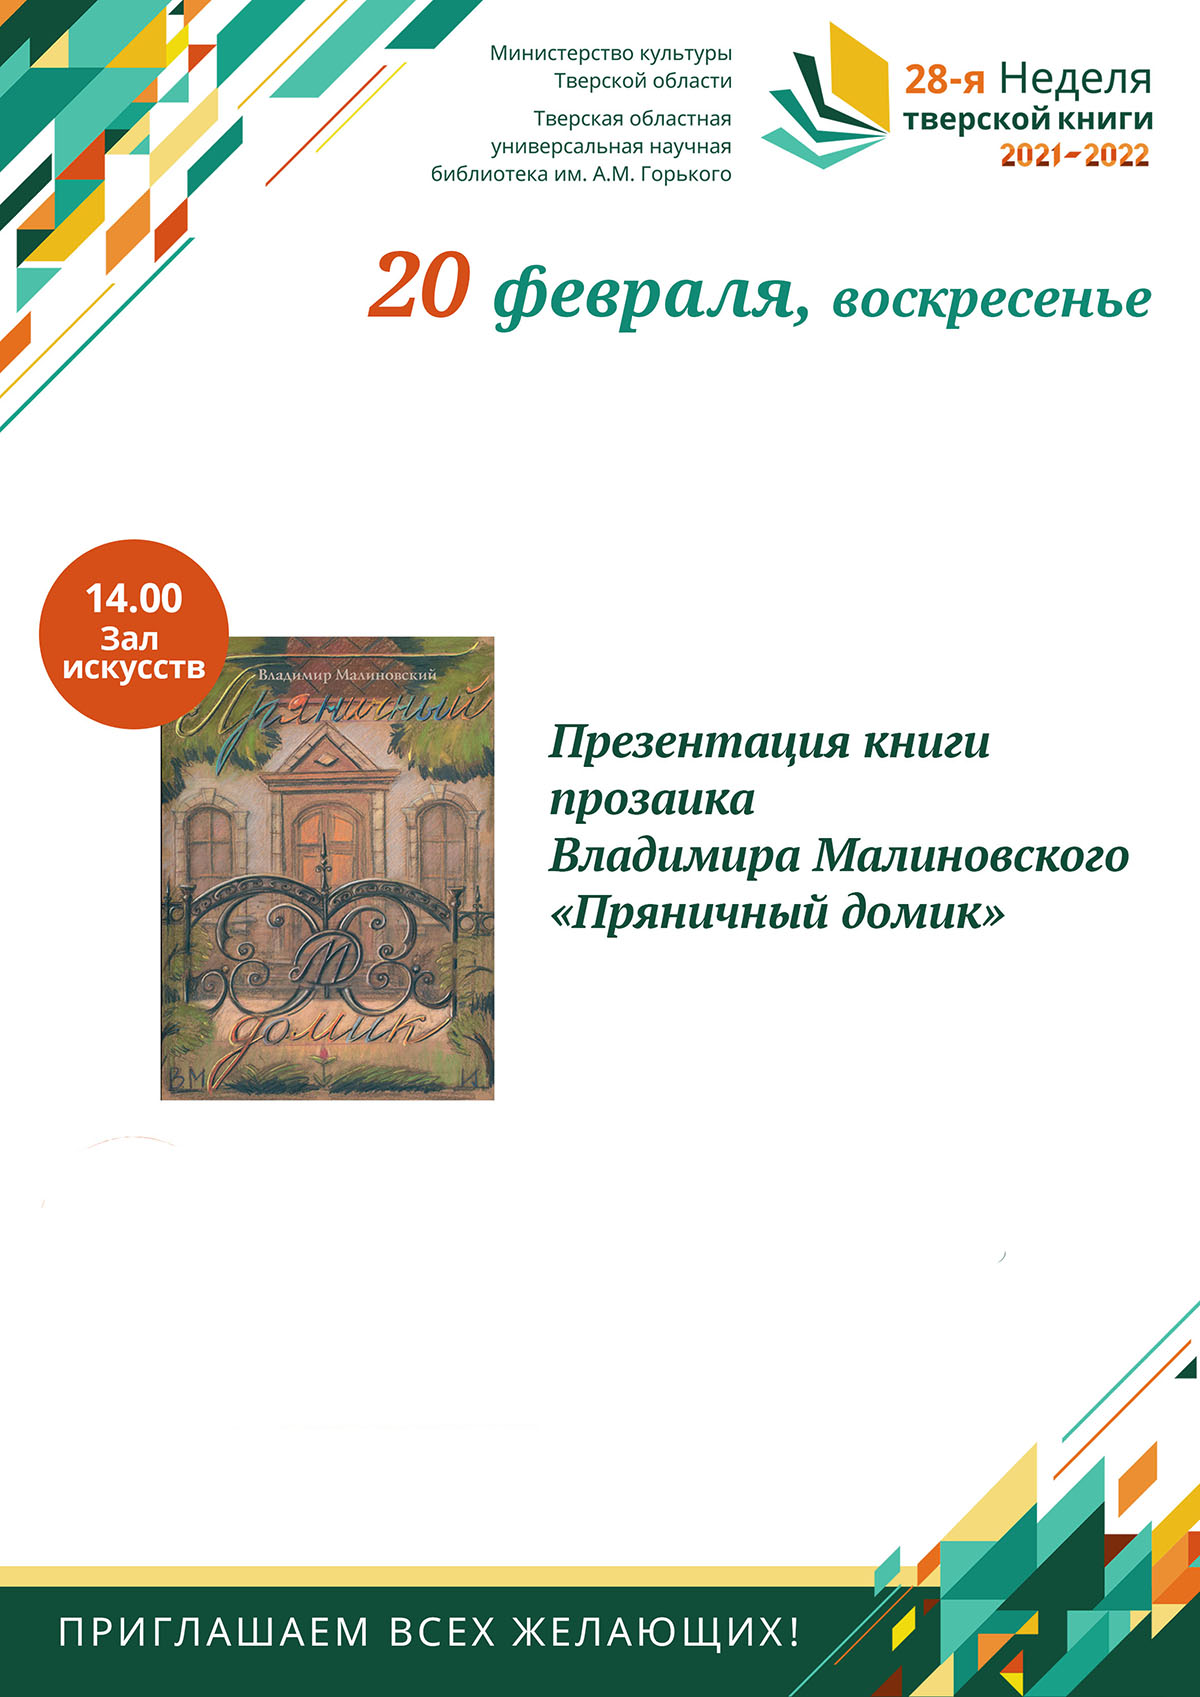 Презентация книги прозаика Владимира Малиновского «Пряничный домик»